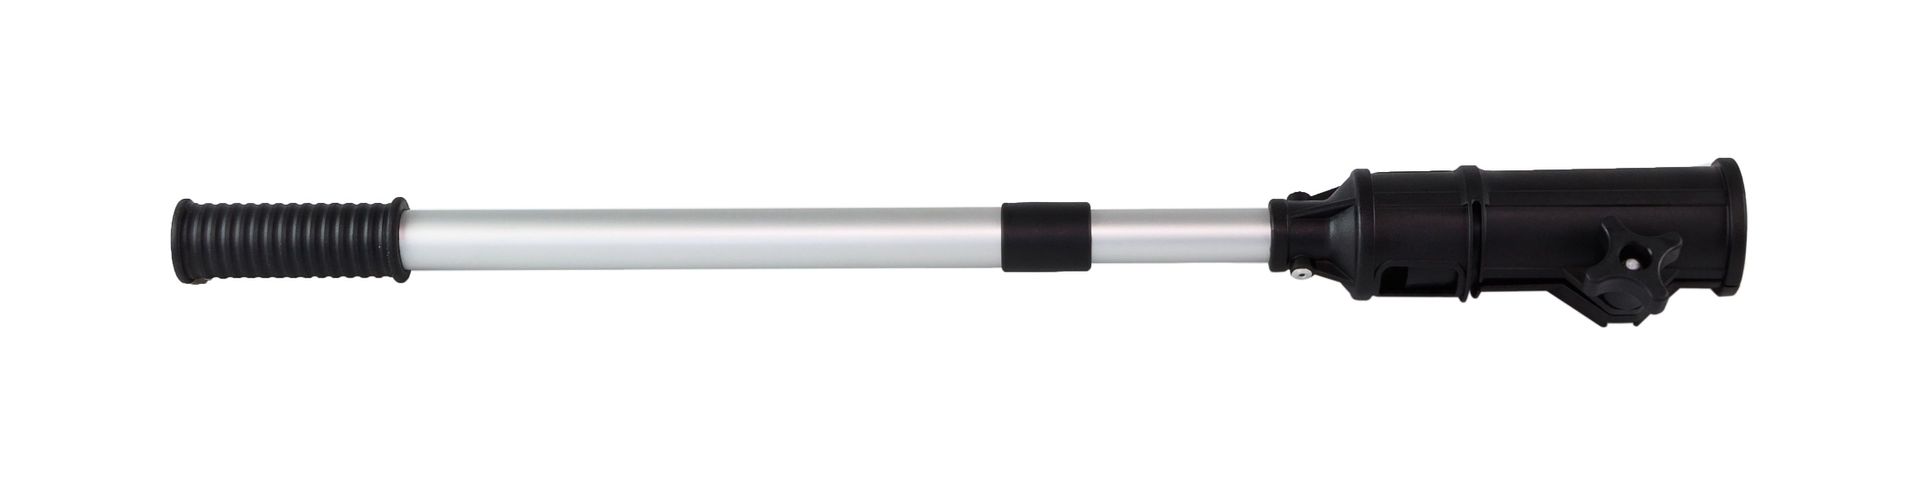 Удлинитель румпеля телескопический 64-100 см C16240 пирсинг в крыло носа